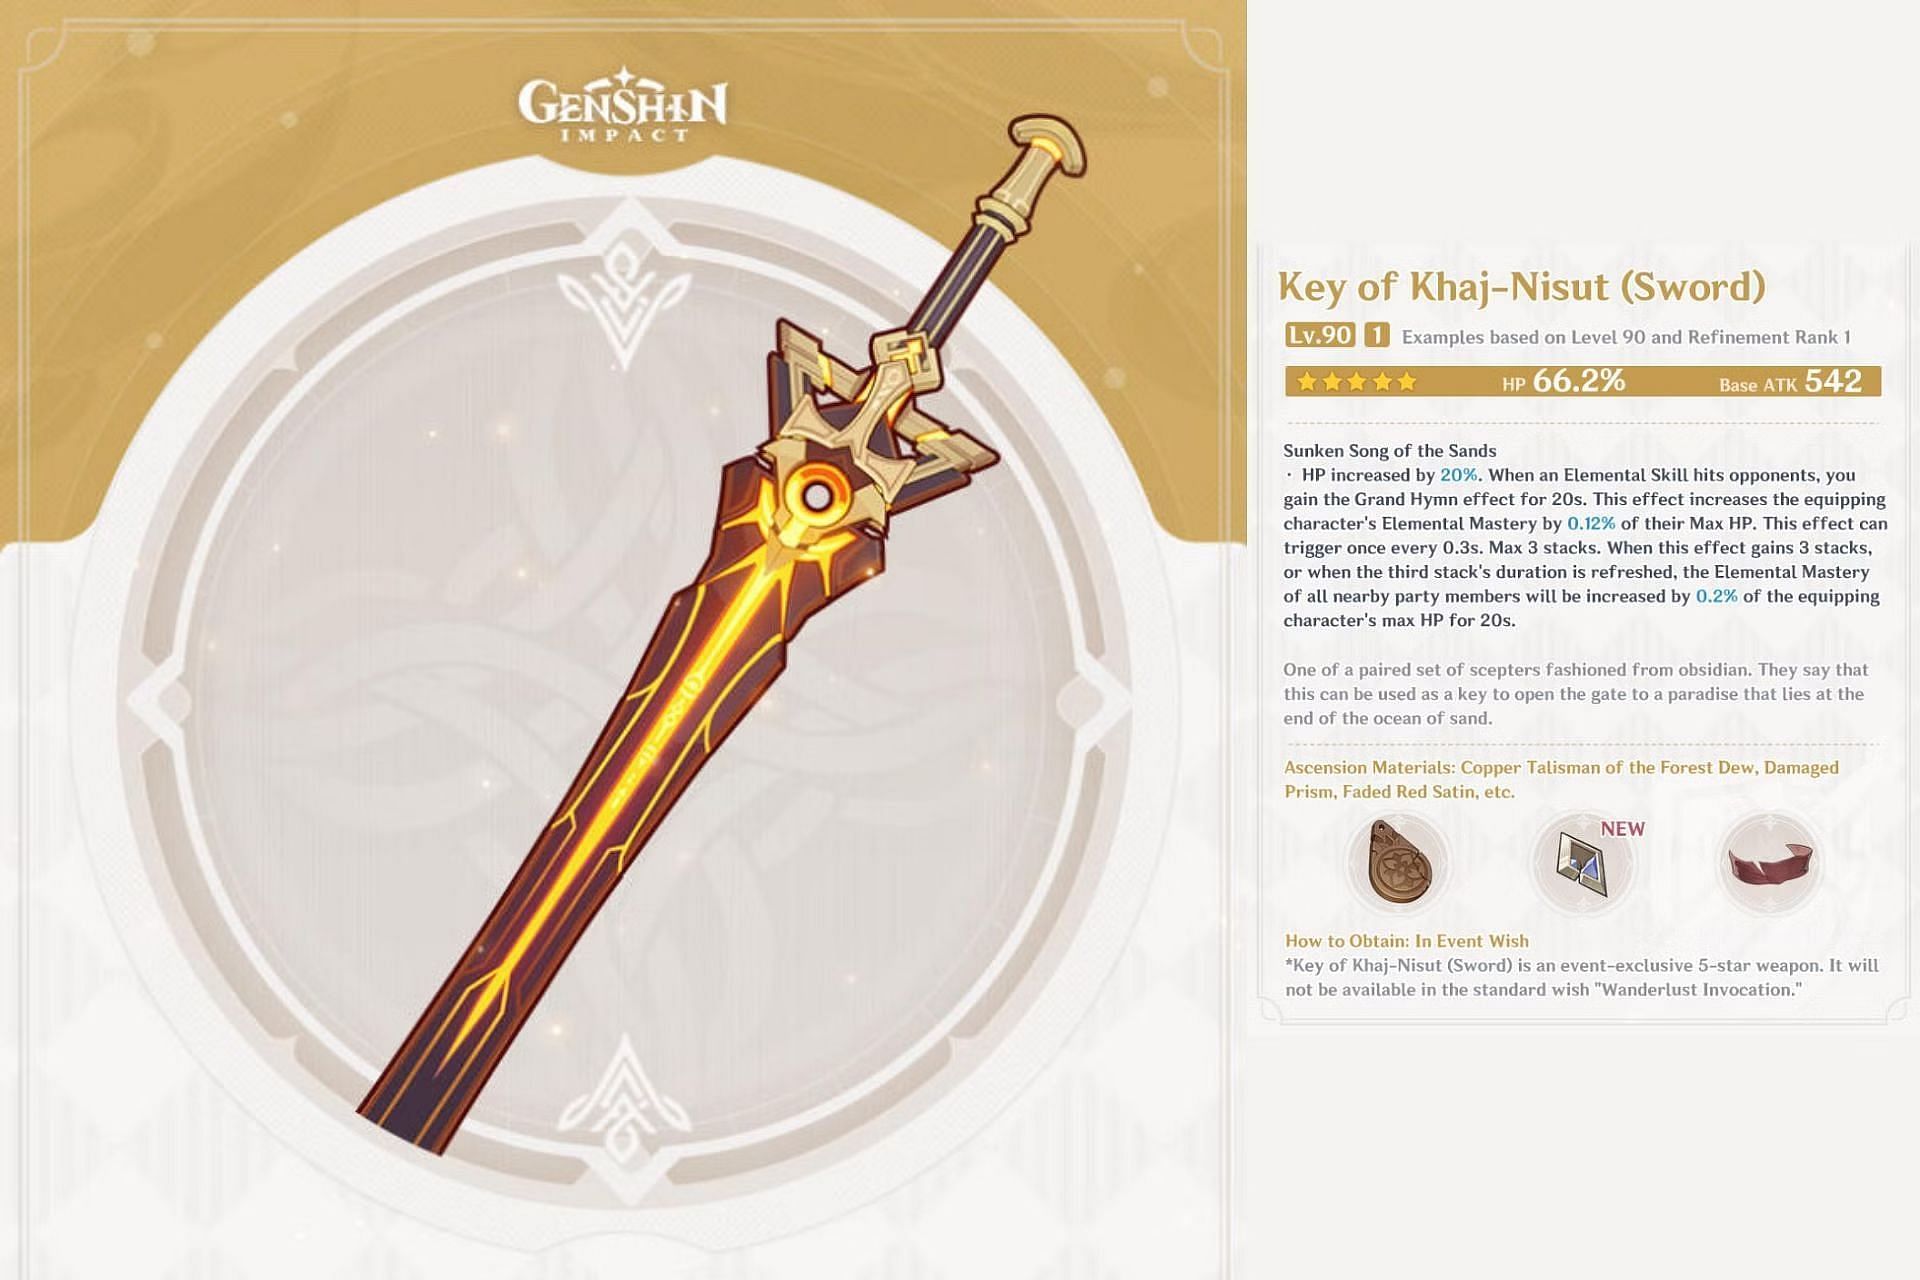 Key of Khaj-Nisut is a 5-star Event Wish weapon (Image via HoYoverse)